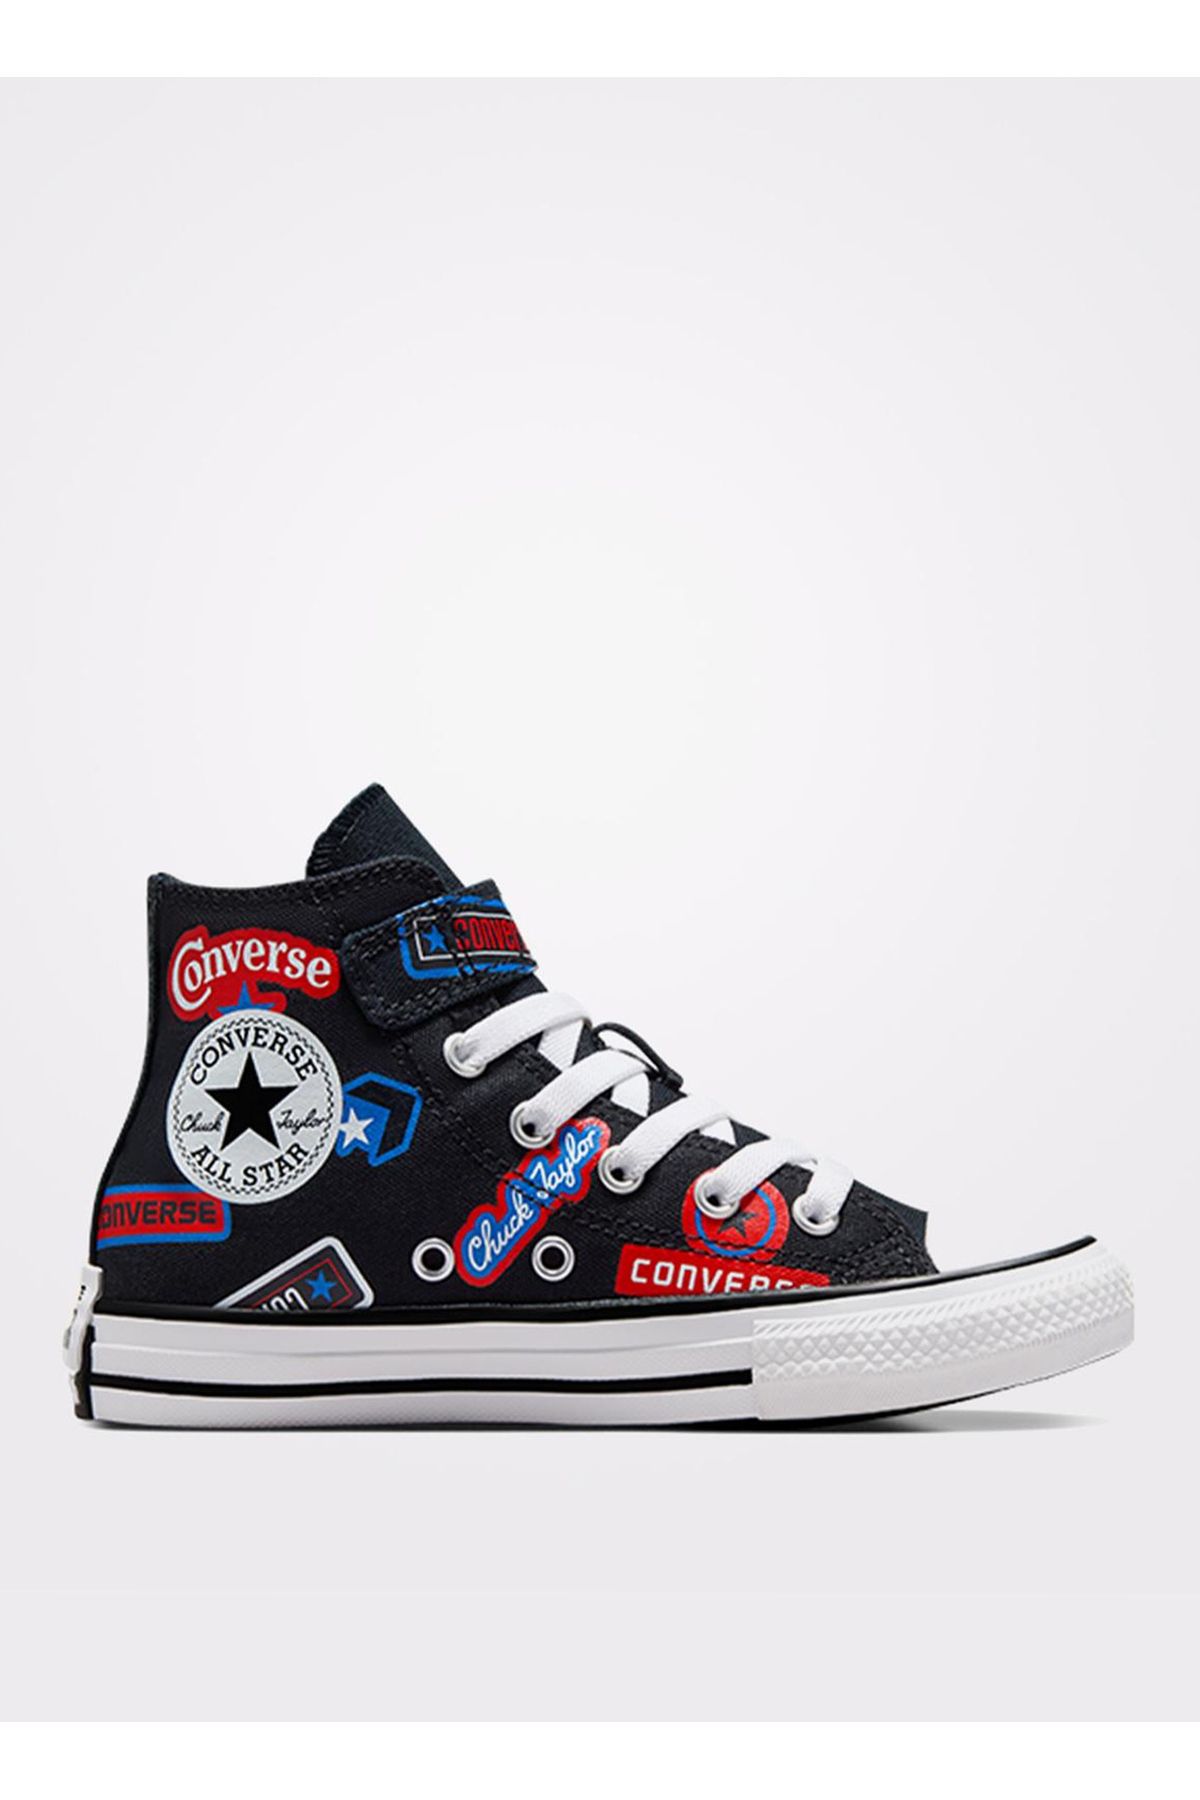 Converse Siyah Erkek Çocuk Yürüyüş Ayakkabısı A06356C.001-CHUCK TAYLOR ALL STAR